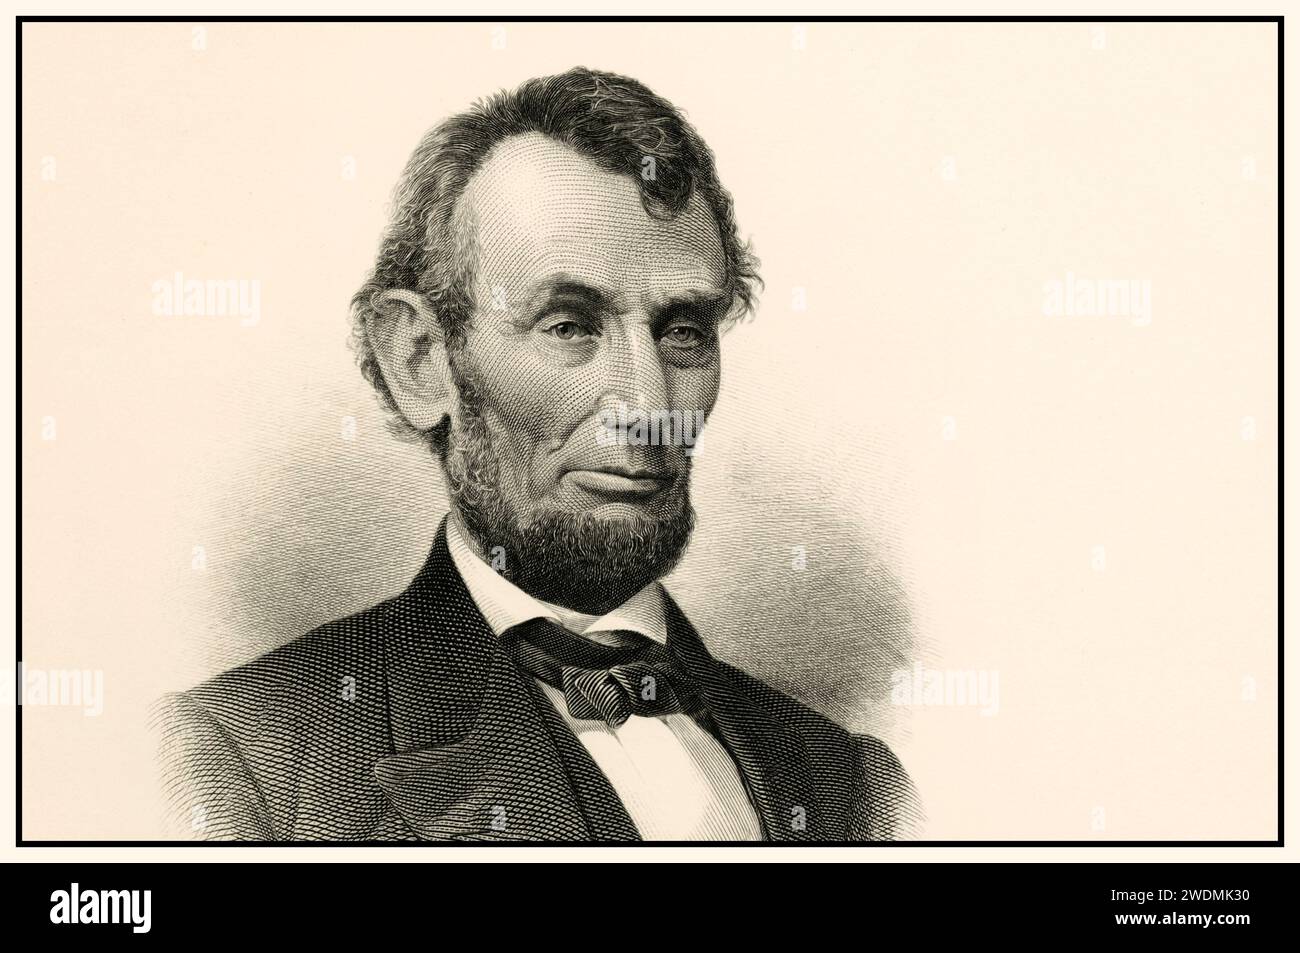 Abraham Lincoln Vintage Etch B&W Portrait 12. Februar 1809 – 15. April 1865) war ein US-amerikanischer Anwalt, Politiker und Staatsmann, der von 1861 bis zu seinem Attentat 1865 als 16. Präsident der Vereinigten Staaten diente. Lincoln führte die Vereinigten Staaten durch den Amerikanischen Bürgerkrieg, verteidigte die Nation als konstitutionelle union, besiegte die aufständische Konföderation, schaffte die Sklaverei ab, erweiterte die Macht der Bundesregierung und modernisierte die US-Wirtschaft. Stockfoto